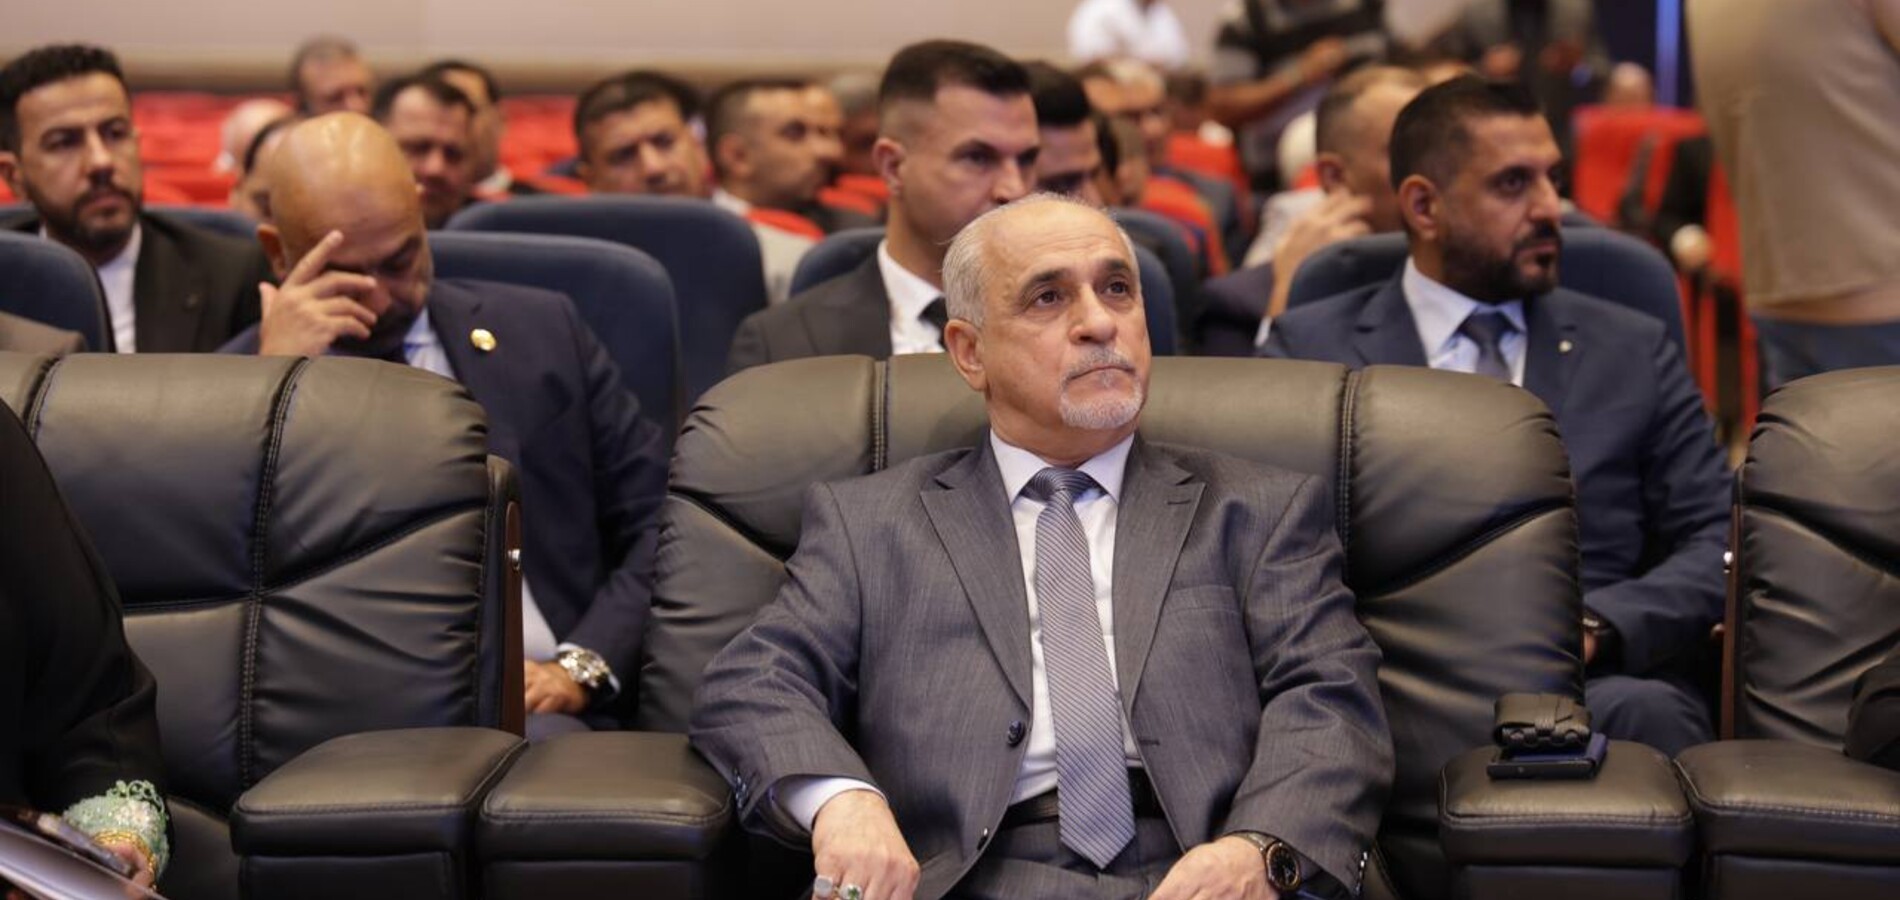 مدير عام شركة الاستكشافات النفطية يحضر افتتاح اعمال مؤتمر العراق الدولي الأول للمشاريع النفطية وجولات التراخيص